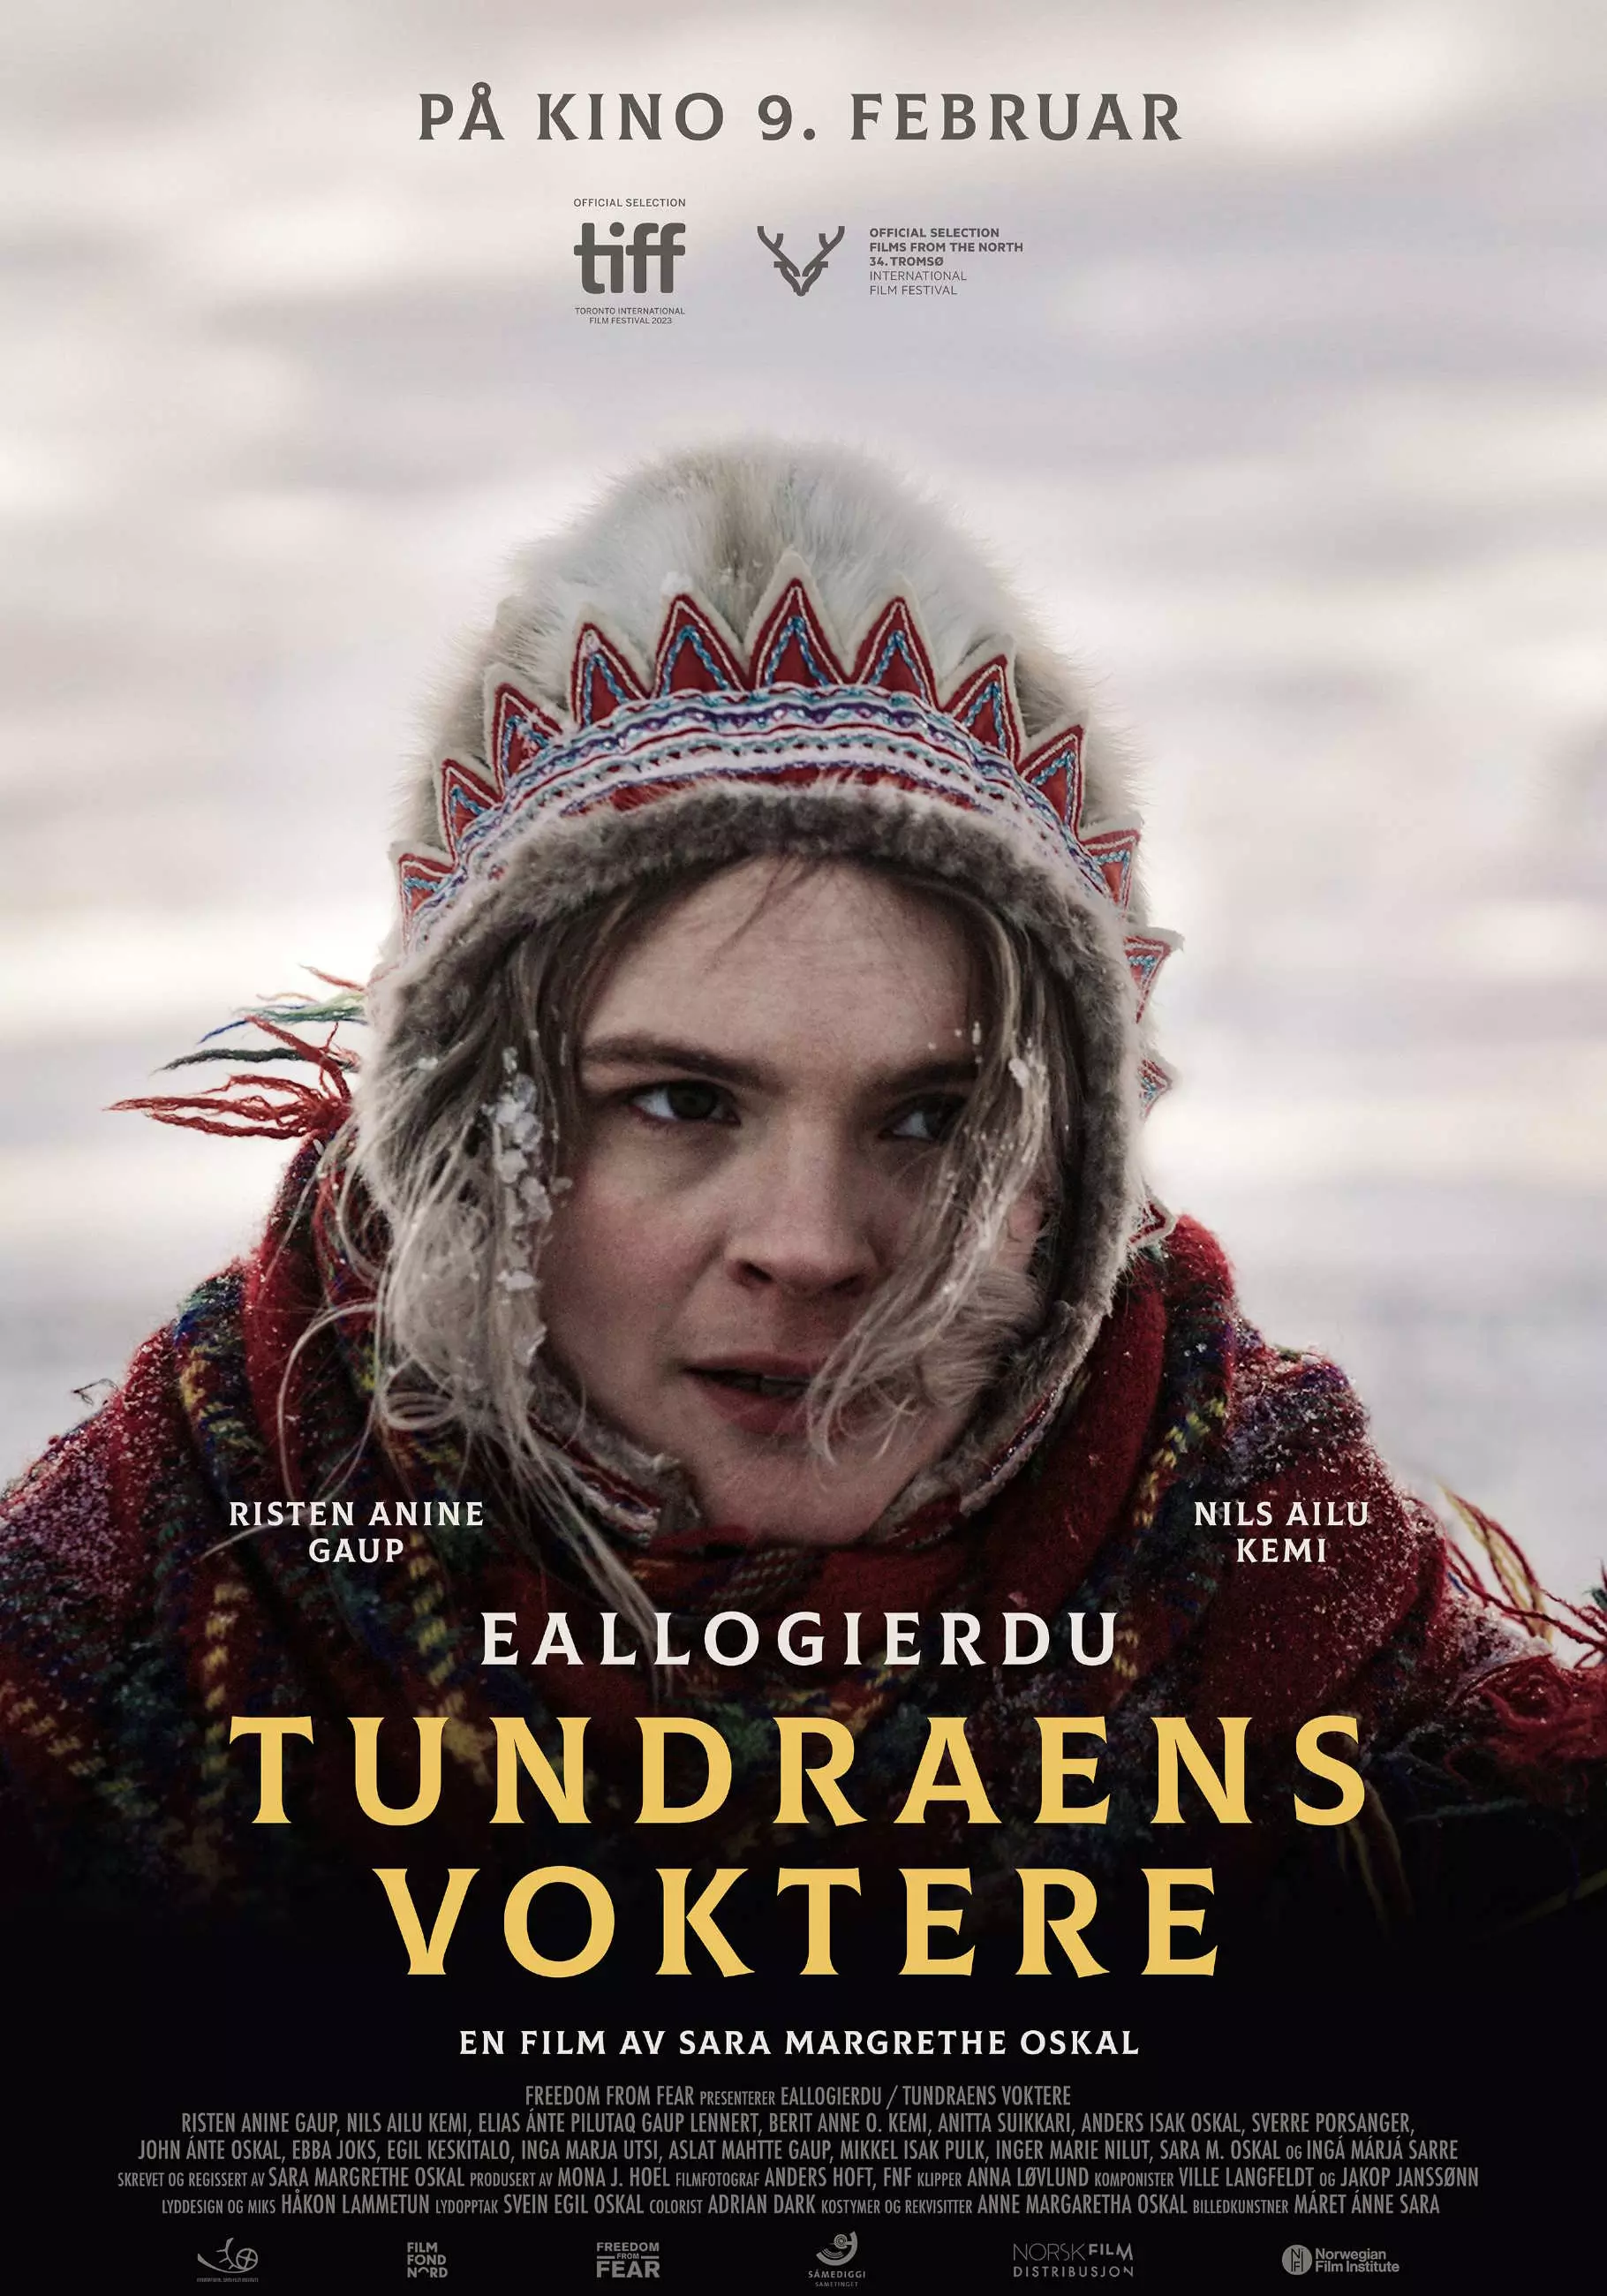 Filmplakat. Halvnært bilde av en ung samisk kvinne. Hun har en samisk, skinnlue på hodet, og et rutete sjal rundt skuldrene. Is i håret og et alvorlig blikk. Det ser kaldt ut. Filmens tittel står med lysegule blokkbokstaver nederst på plakaten. Foto.